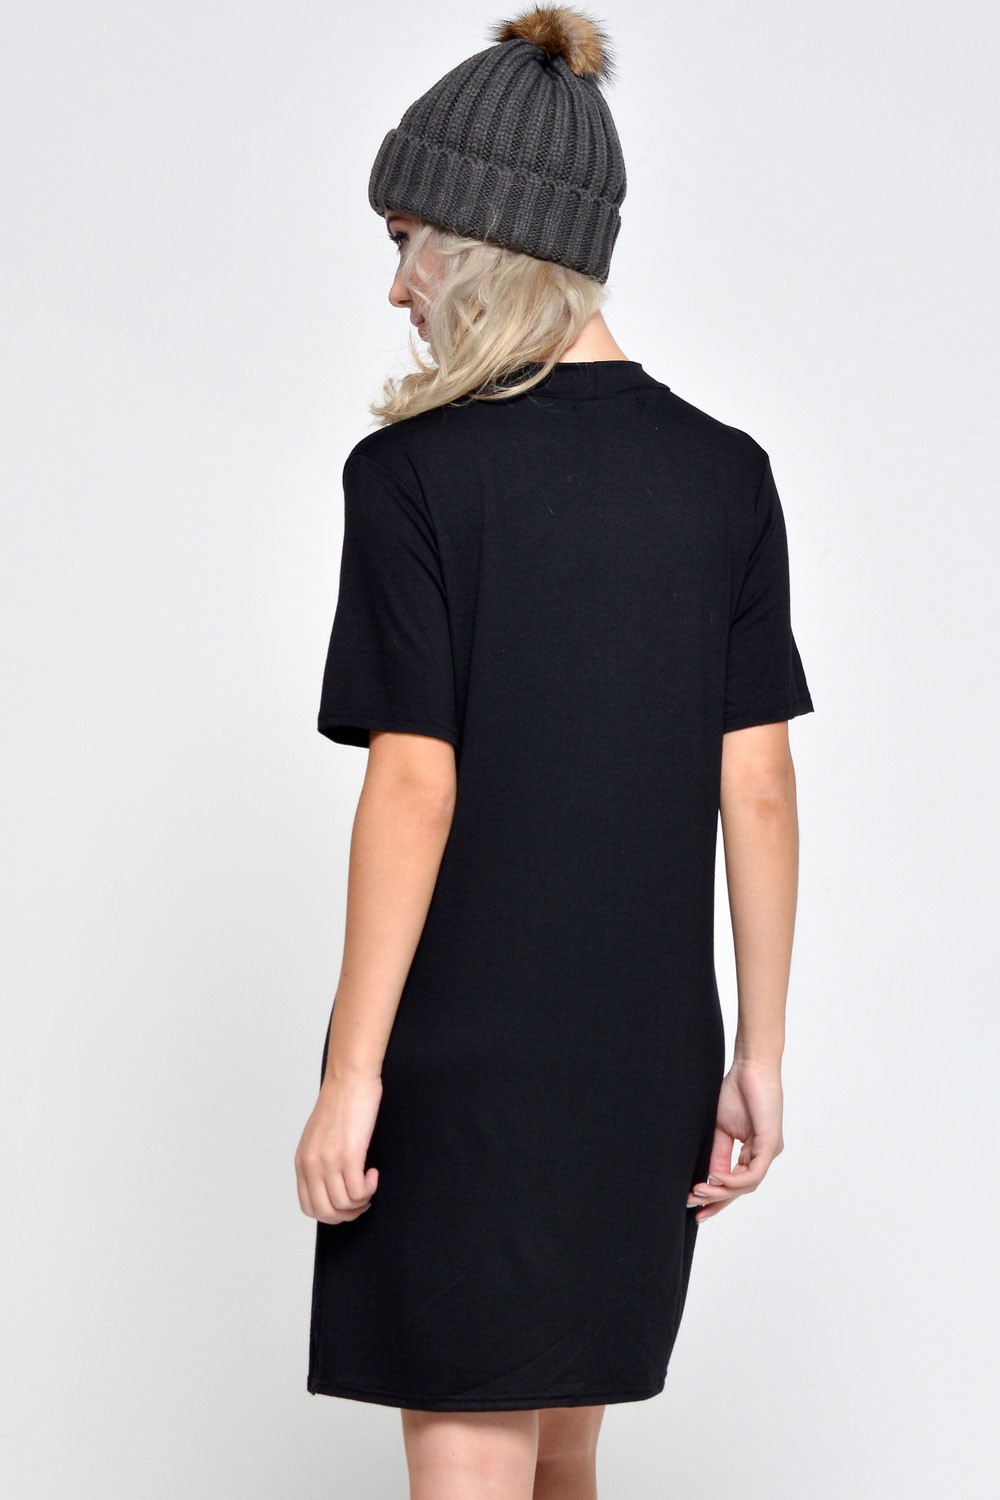 black t shirt dress zara